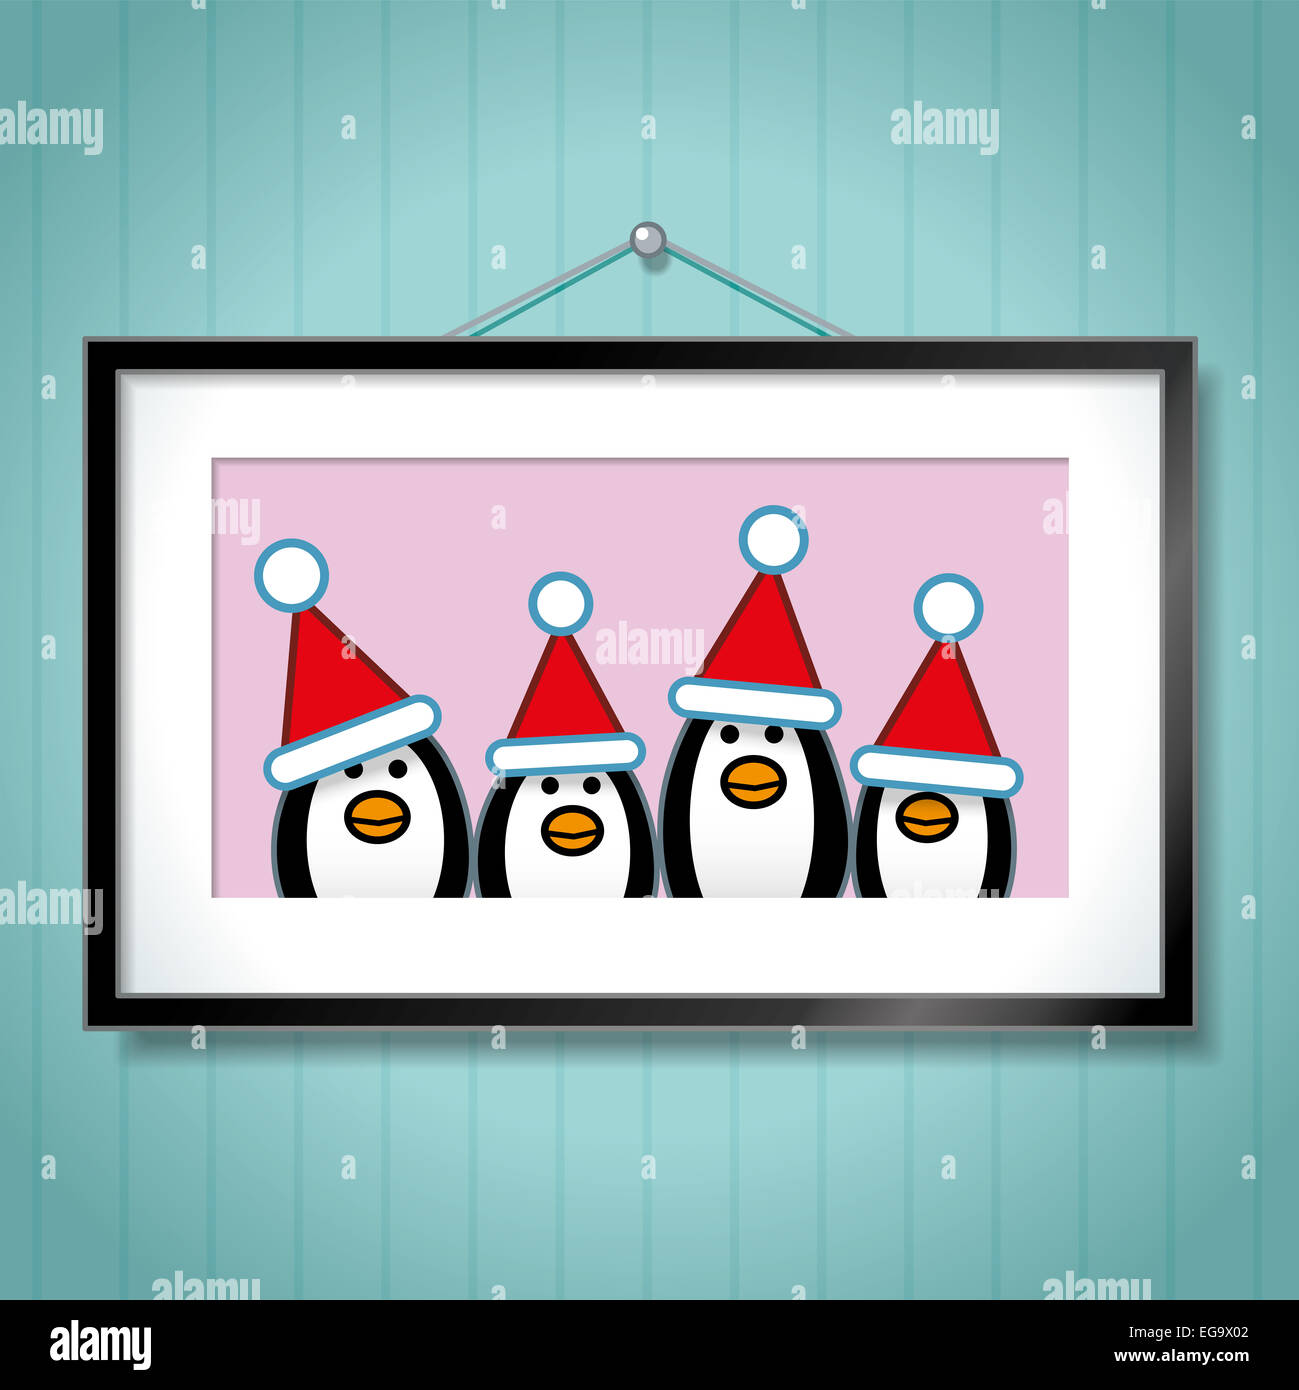 Joli Portrait de famille de pingouins Wearing Santa Hats Cadre Photo en tant que fond bleu accroché sur Banque D'Images